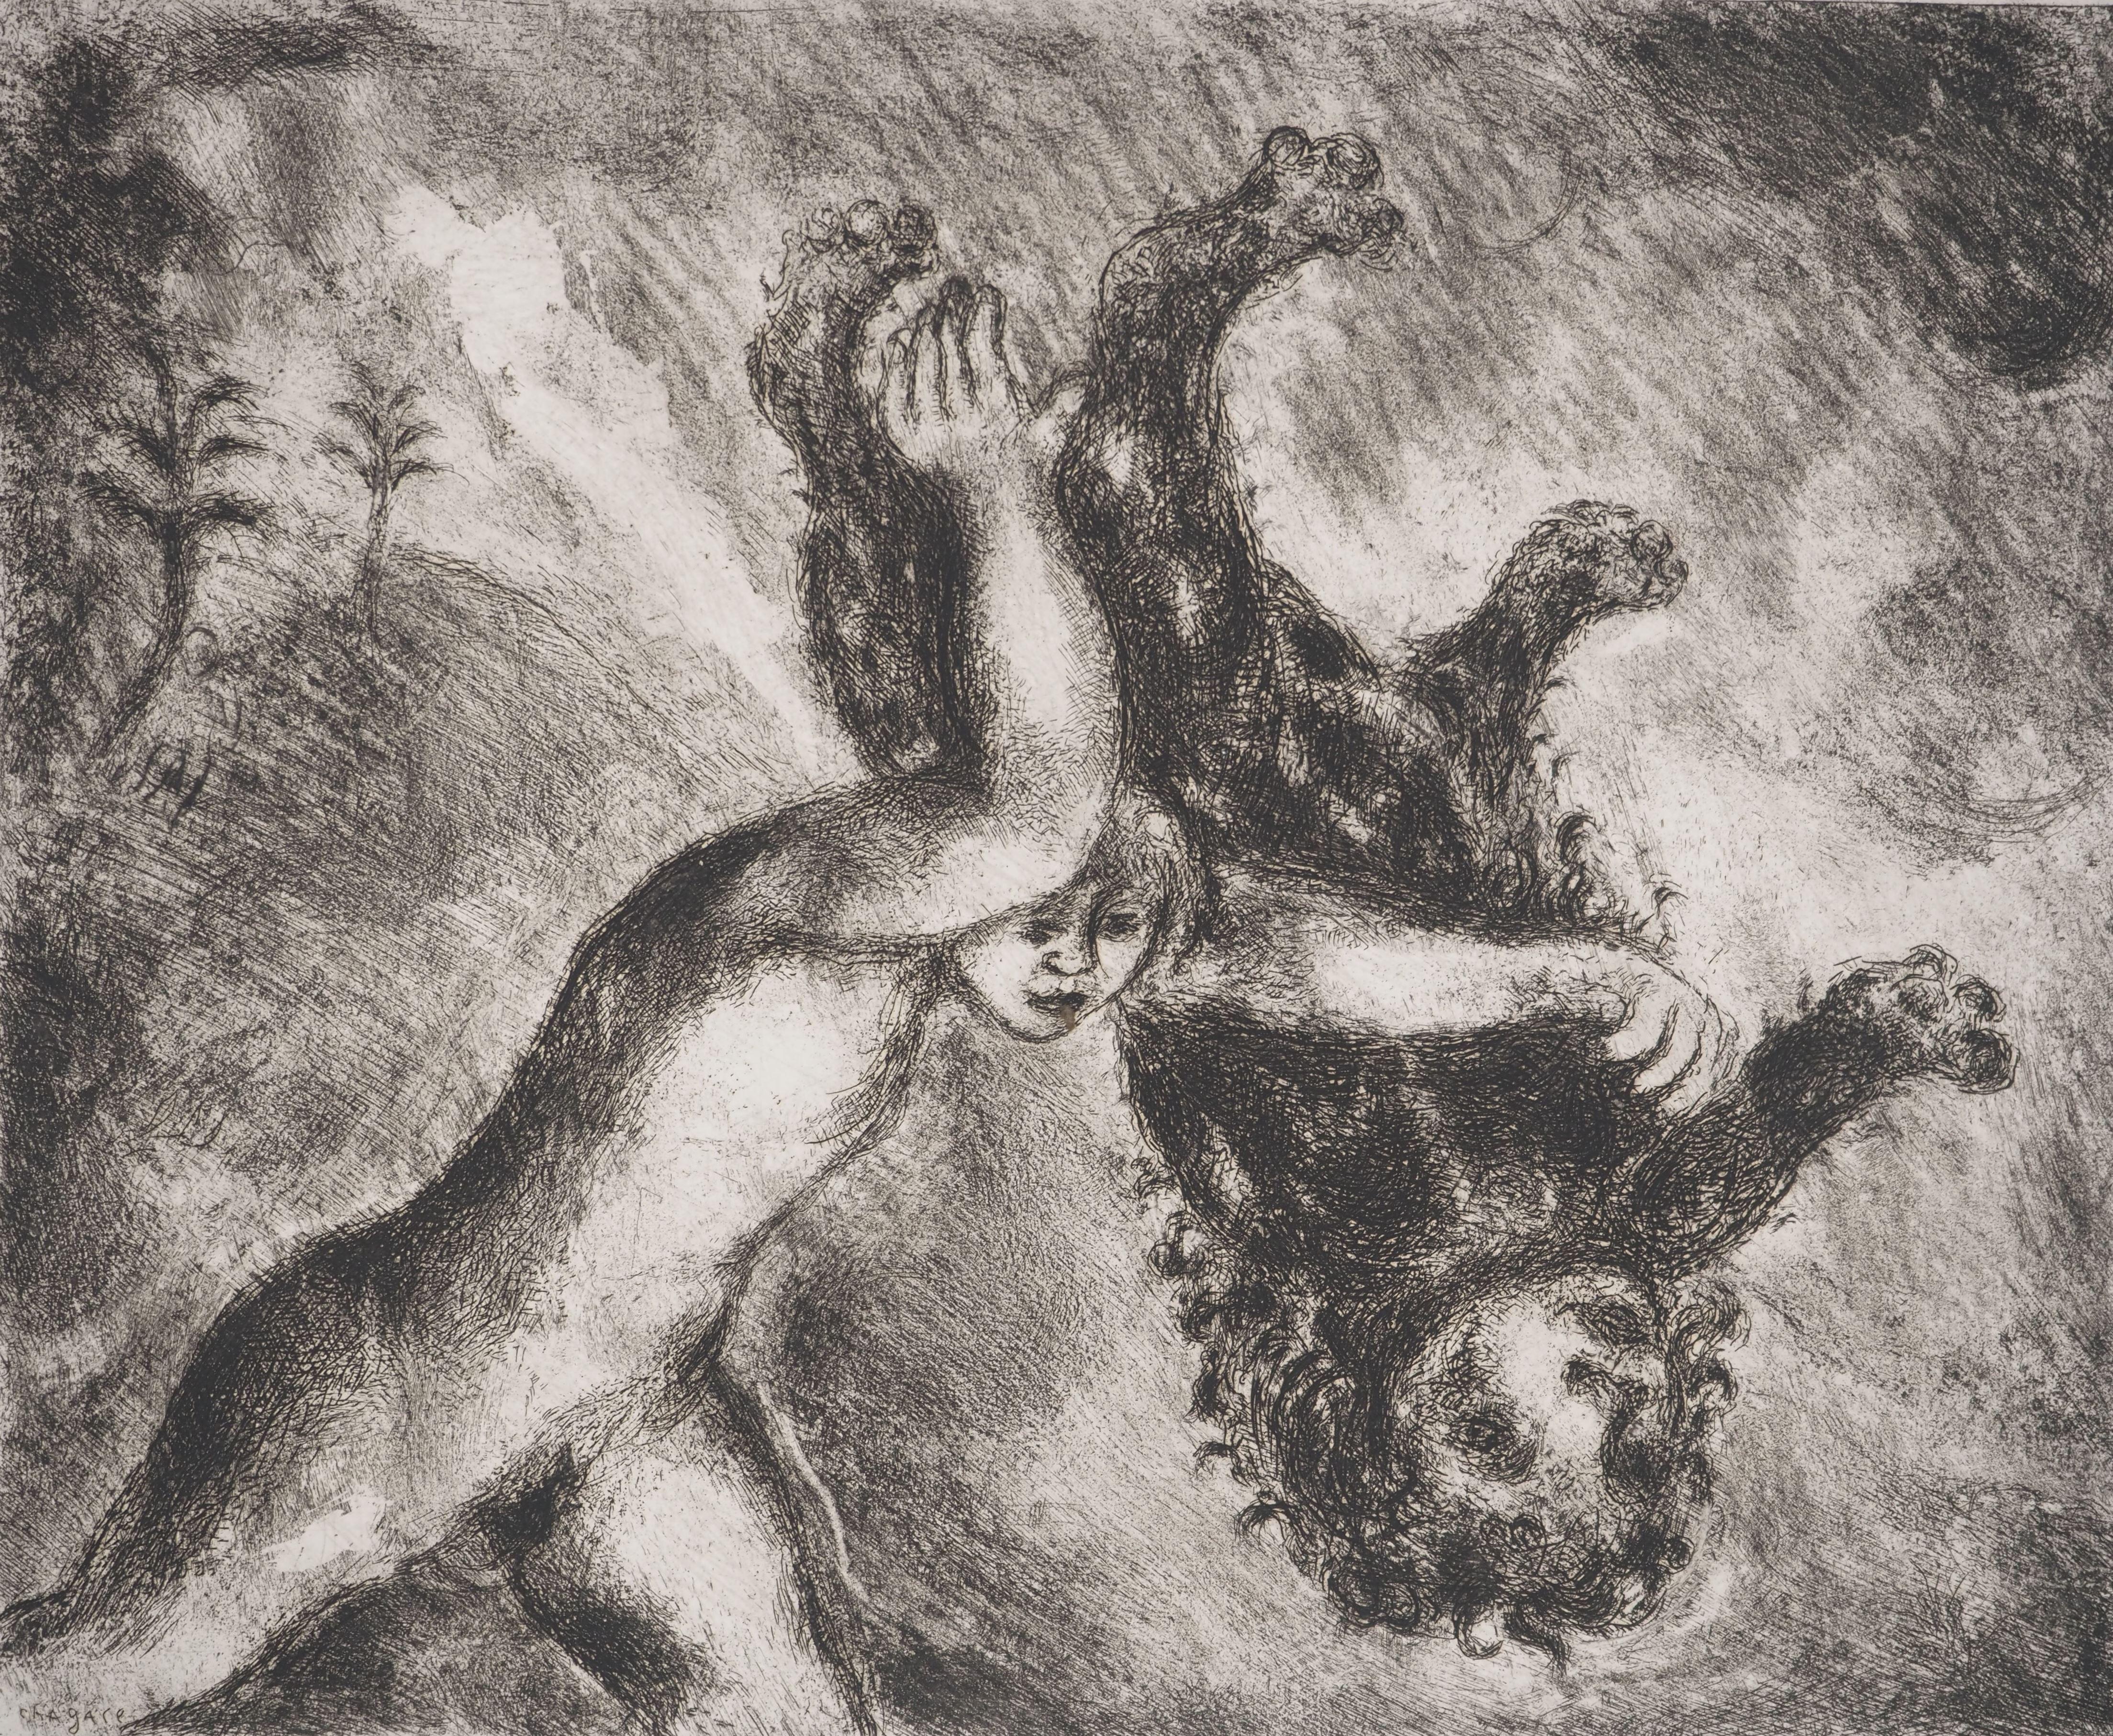 Marc Chagall (1887-1958)
Bible : Samson et le lion, 1939

Gravure originale
Signature imprimée dans la plaque
Sur vélin de Montval, 33.5 x 44 cm (c. 13.1 x 17.3 inch)

INFORMATION : Publié par Vollard / Tériade en 1956

RÉFÉRENCE : Catalogue